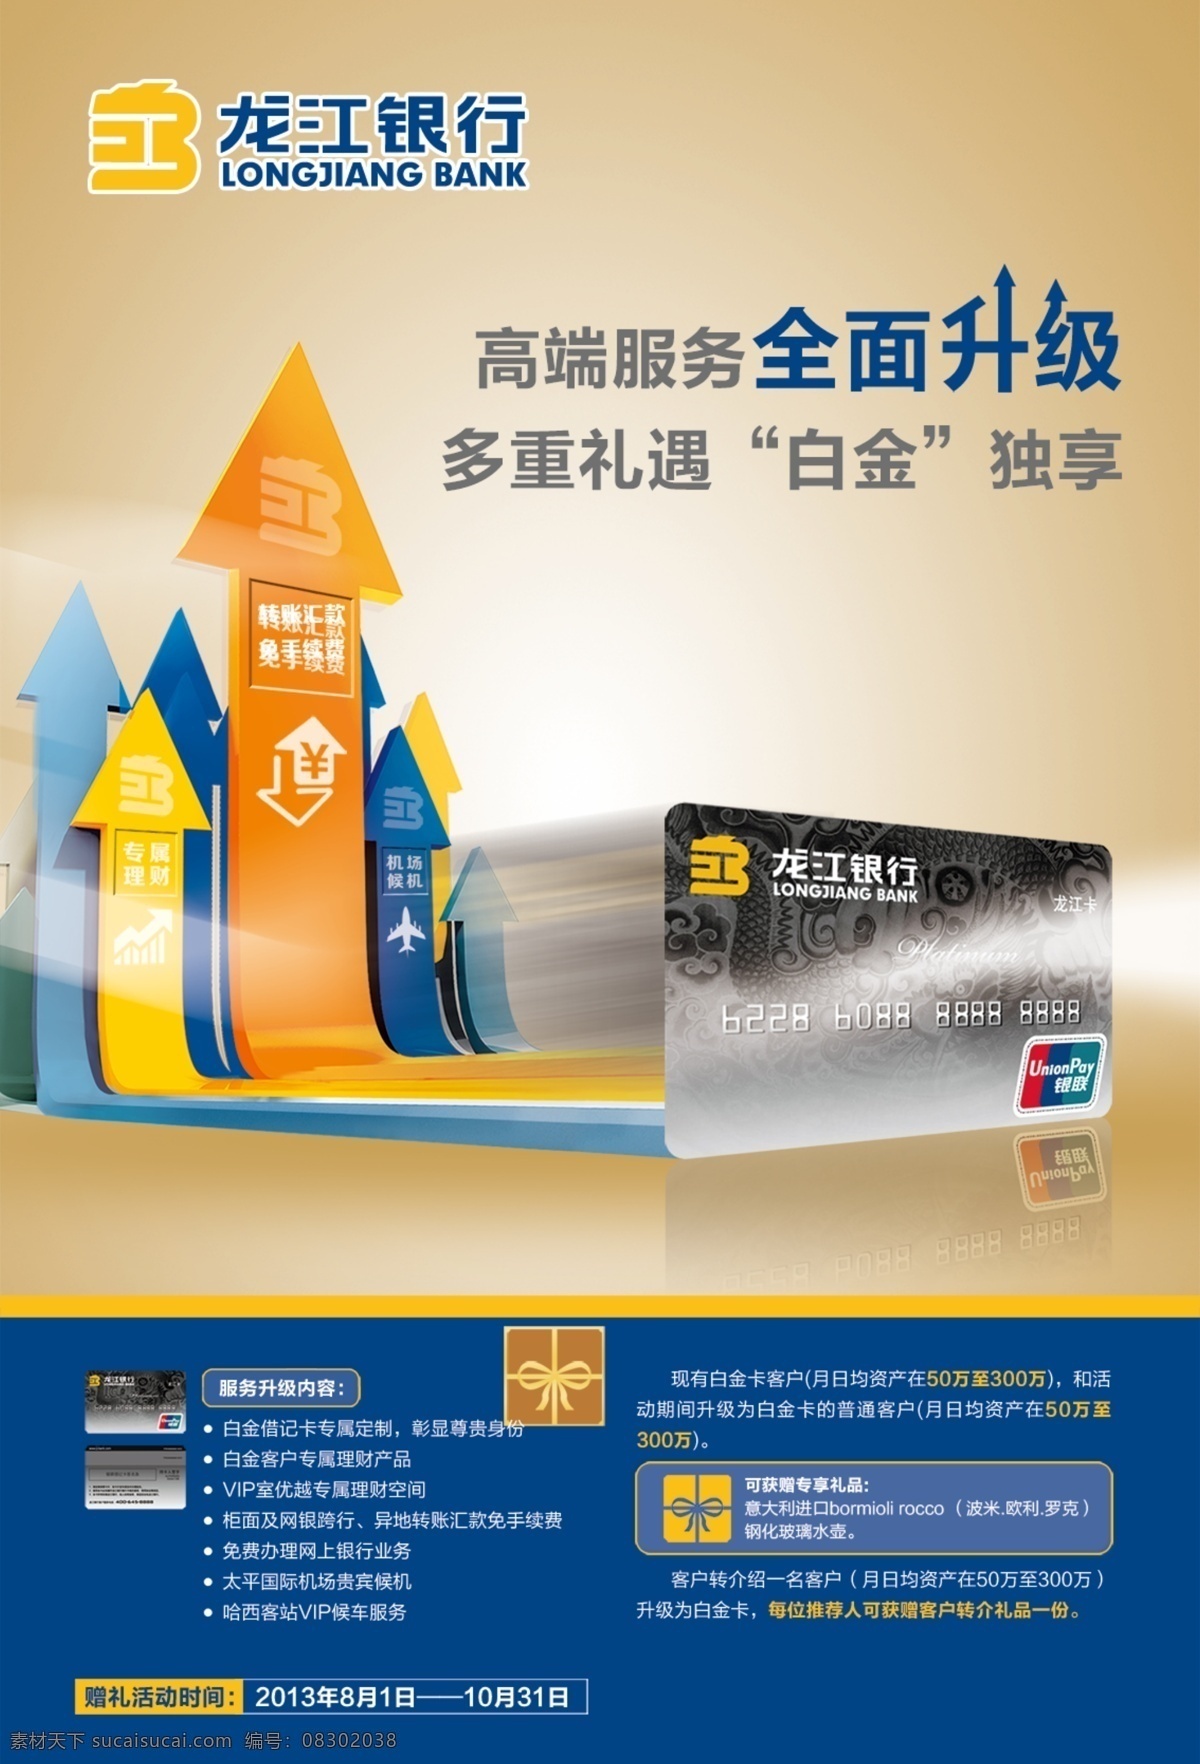 银行 信用卡 广告 龙江银行 宣传广告 创意广告 借记卡 宣传海报 白金卡 商务广告 箭头 银行卡 海报素材 广告设计模板 平面广告